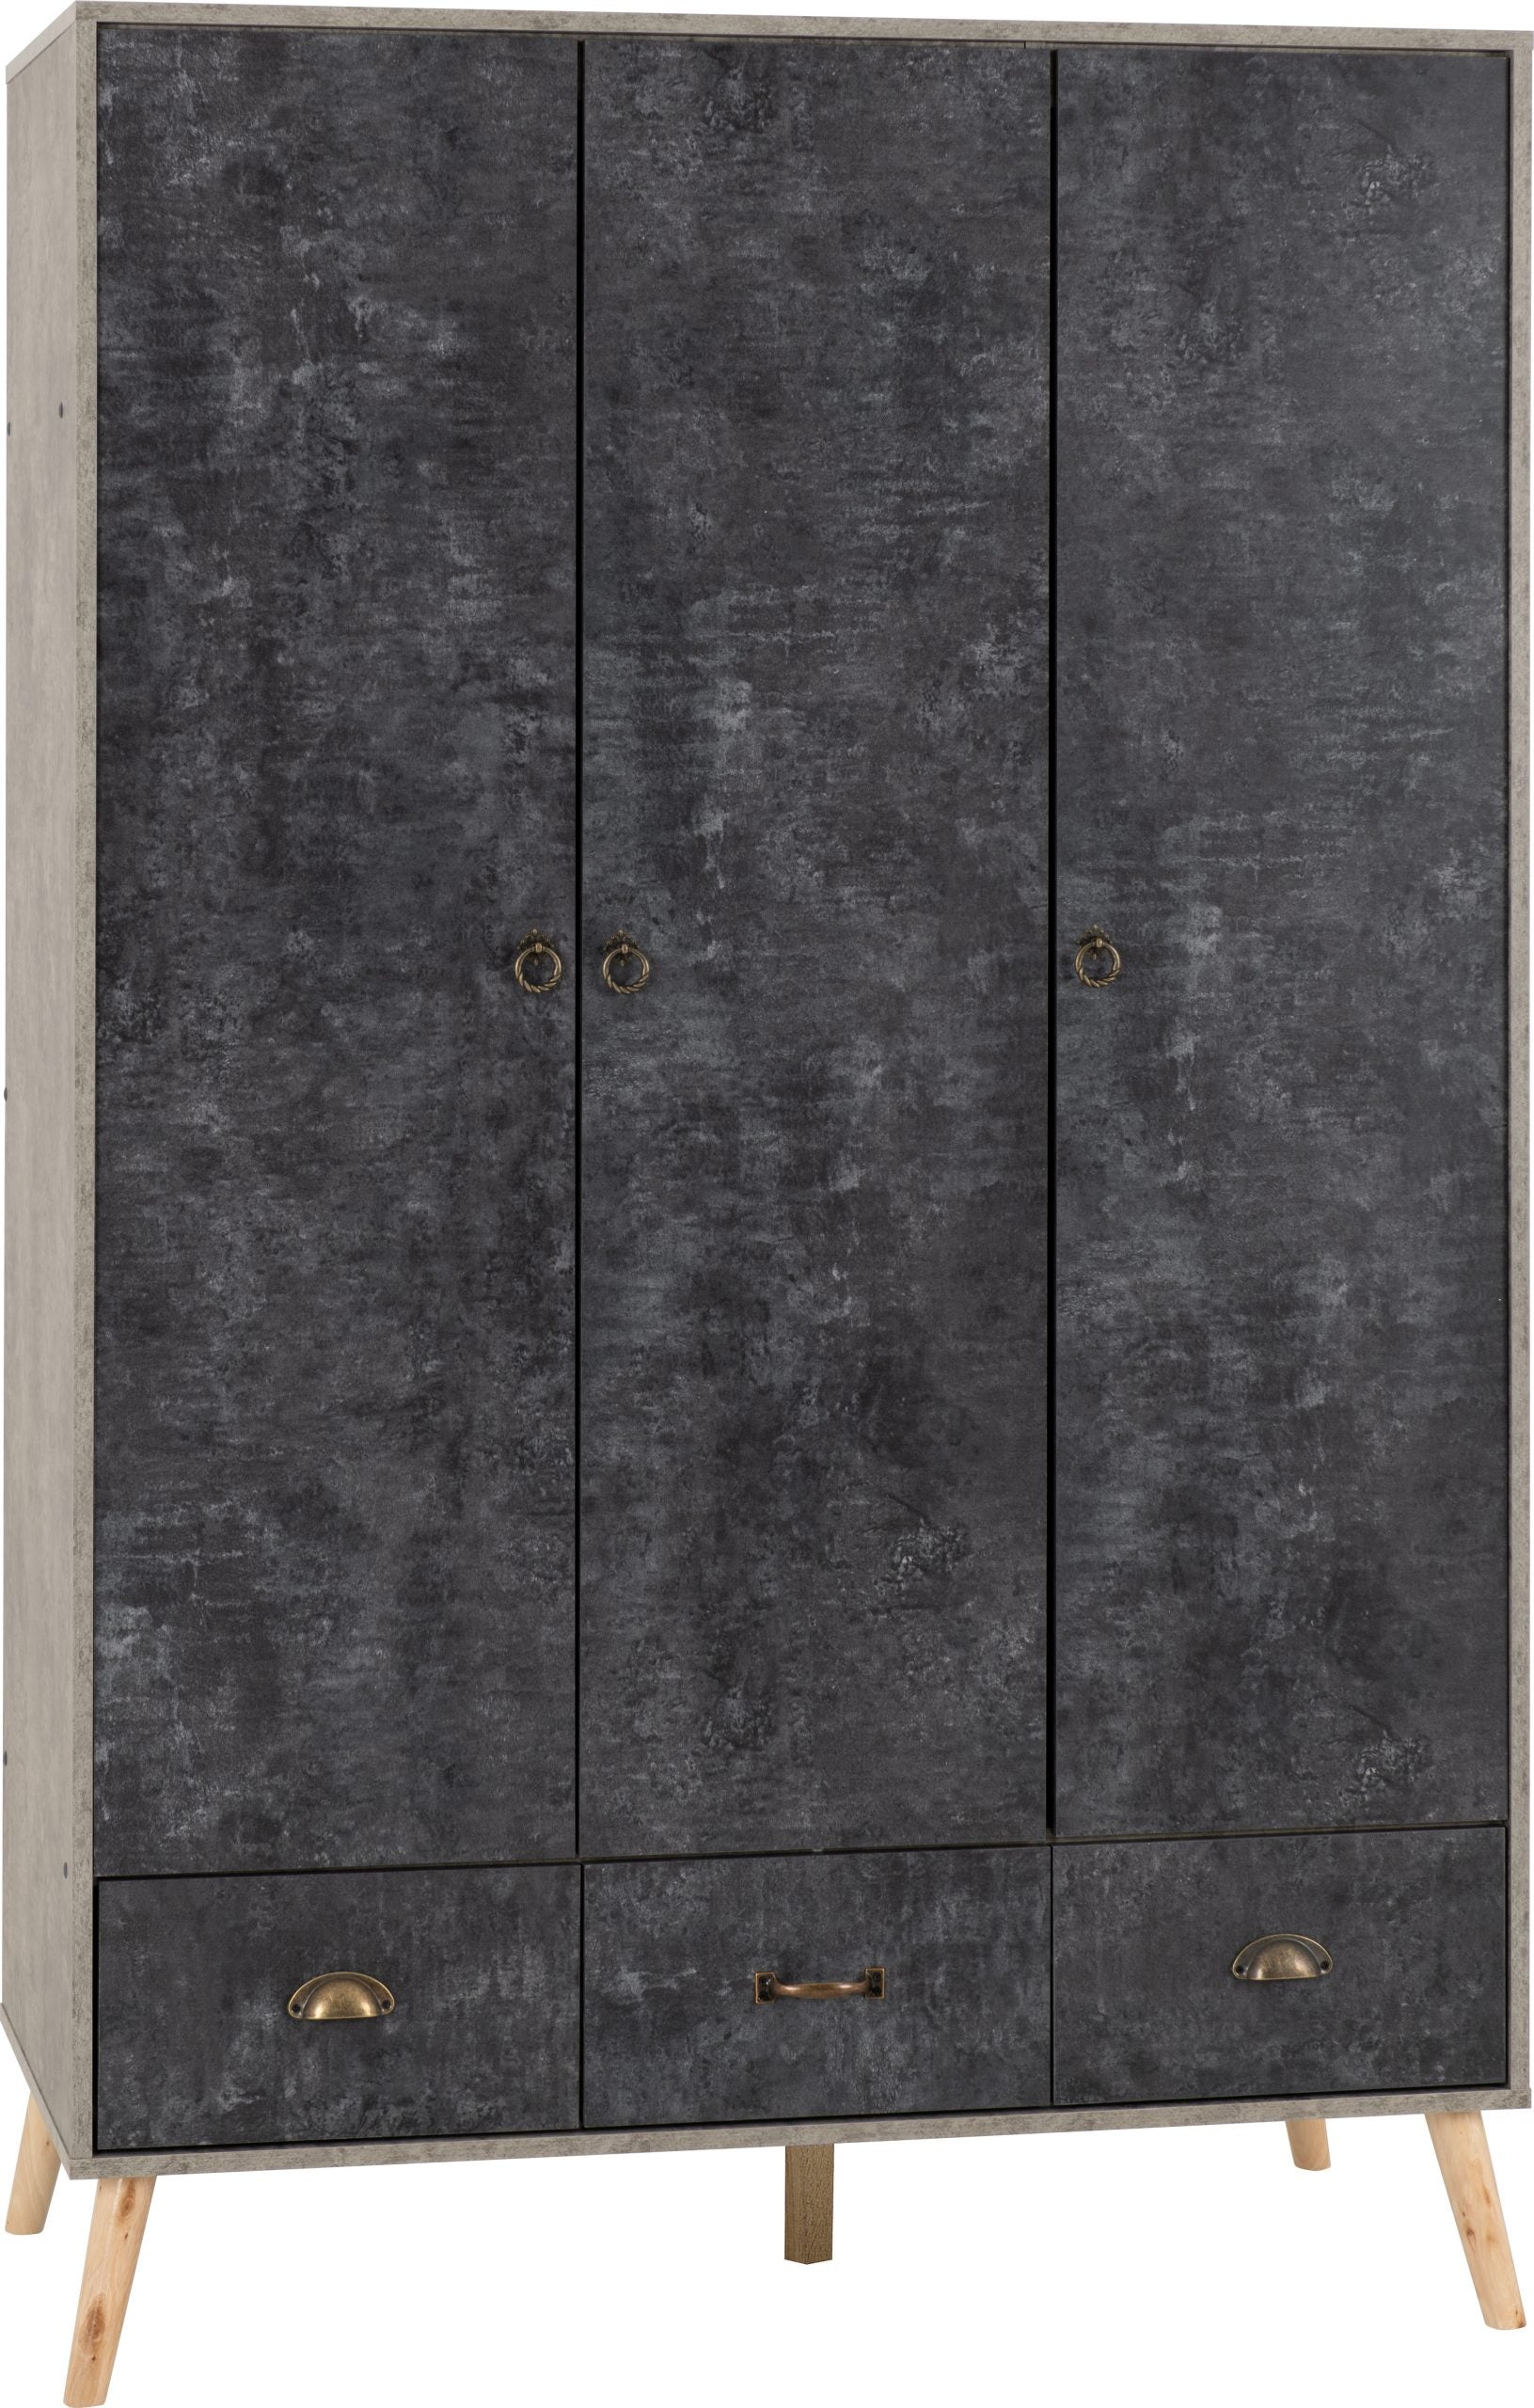 Nordic 3 Door 3 Drawer Wardrobe Concrete Effect/Charcoal